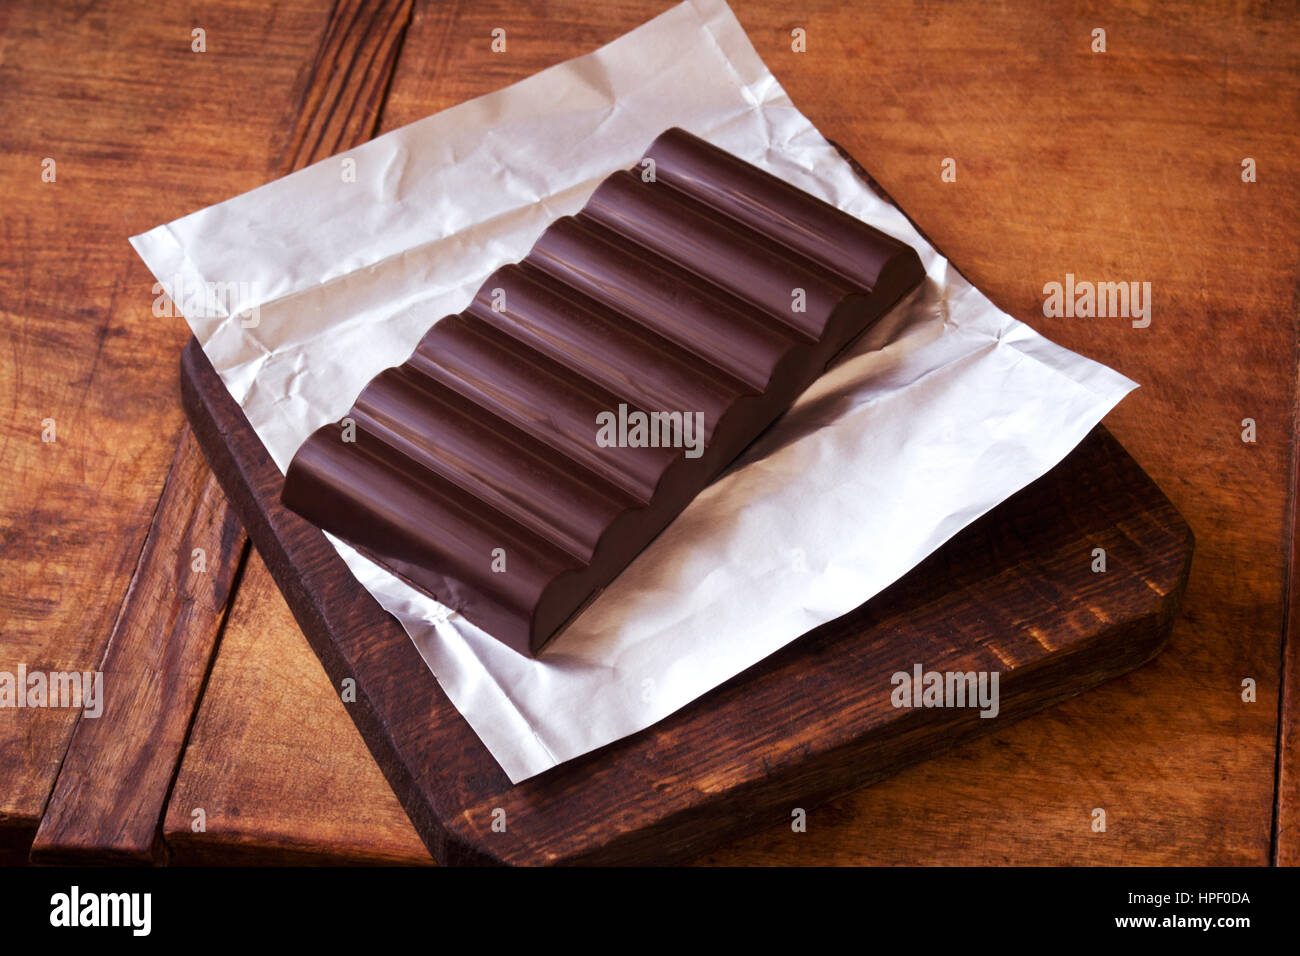 Barre de chocolat sur la table de bois rustique Banque D'Images